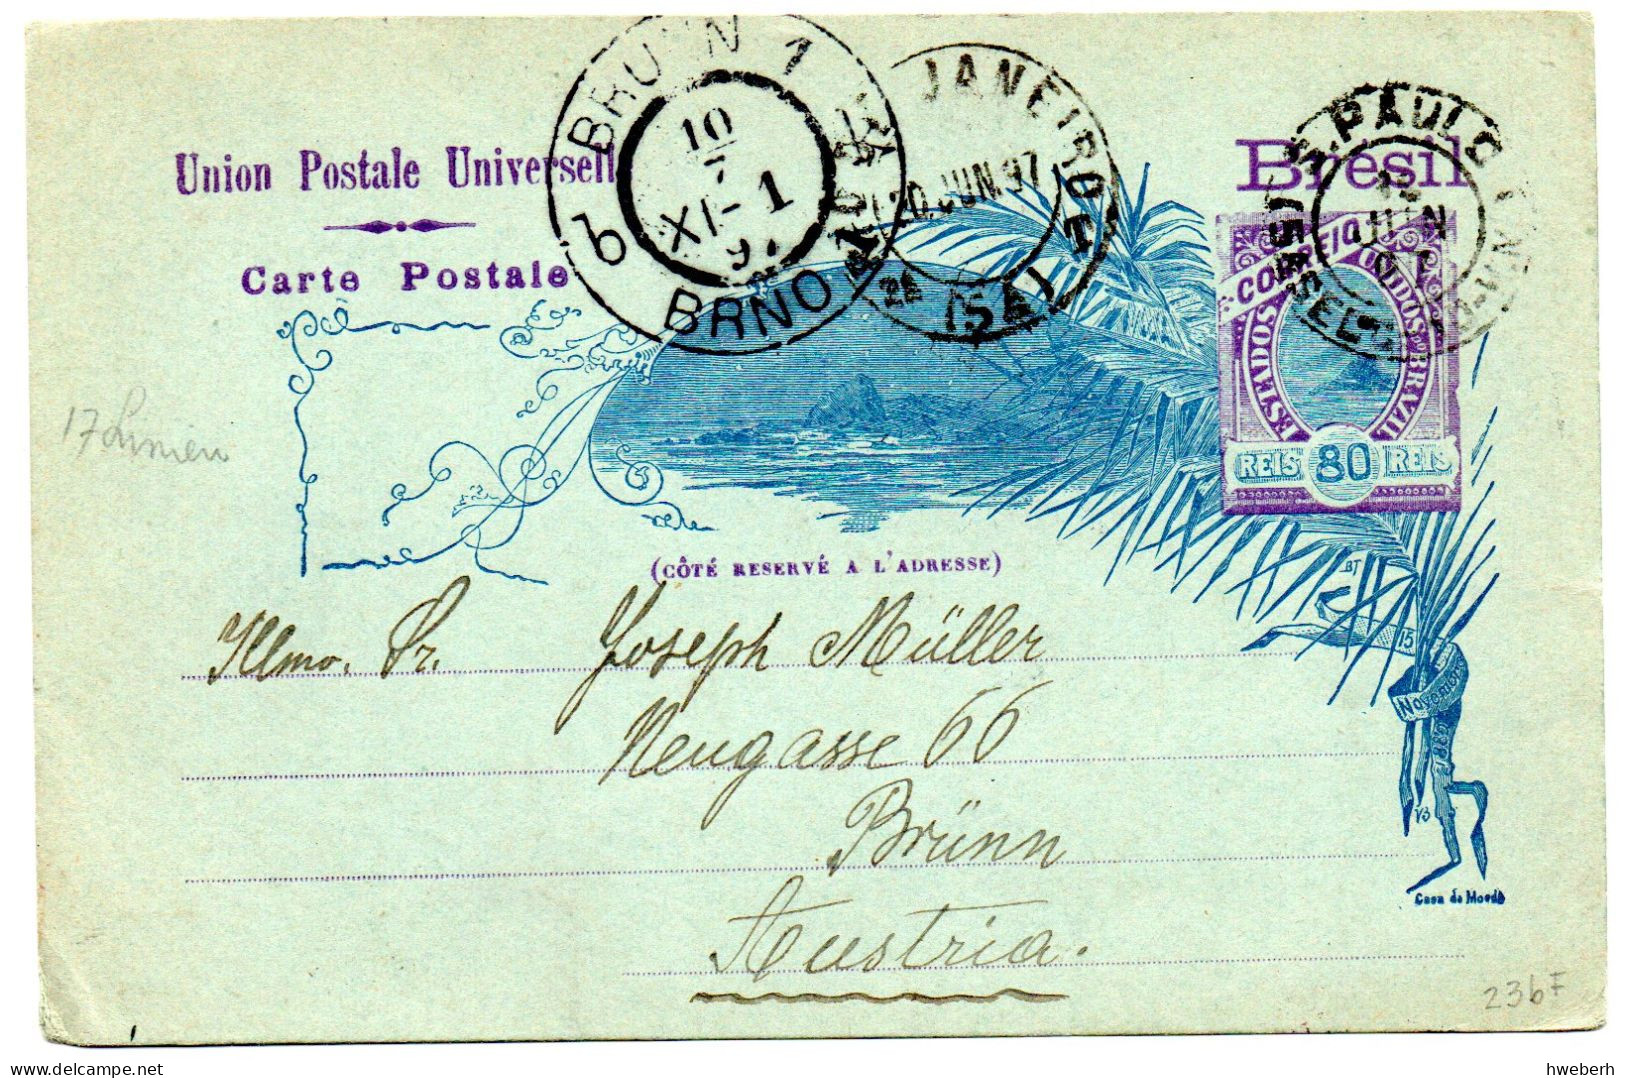 1897/1924 Lot de 15 Entiers ou Lettres ayant circulé (voir détail)